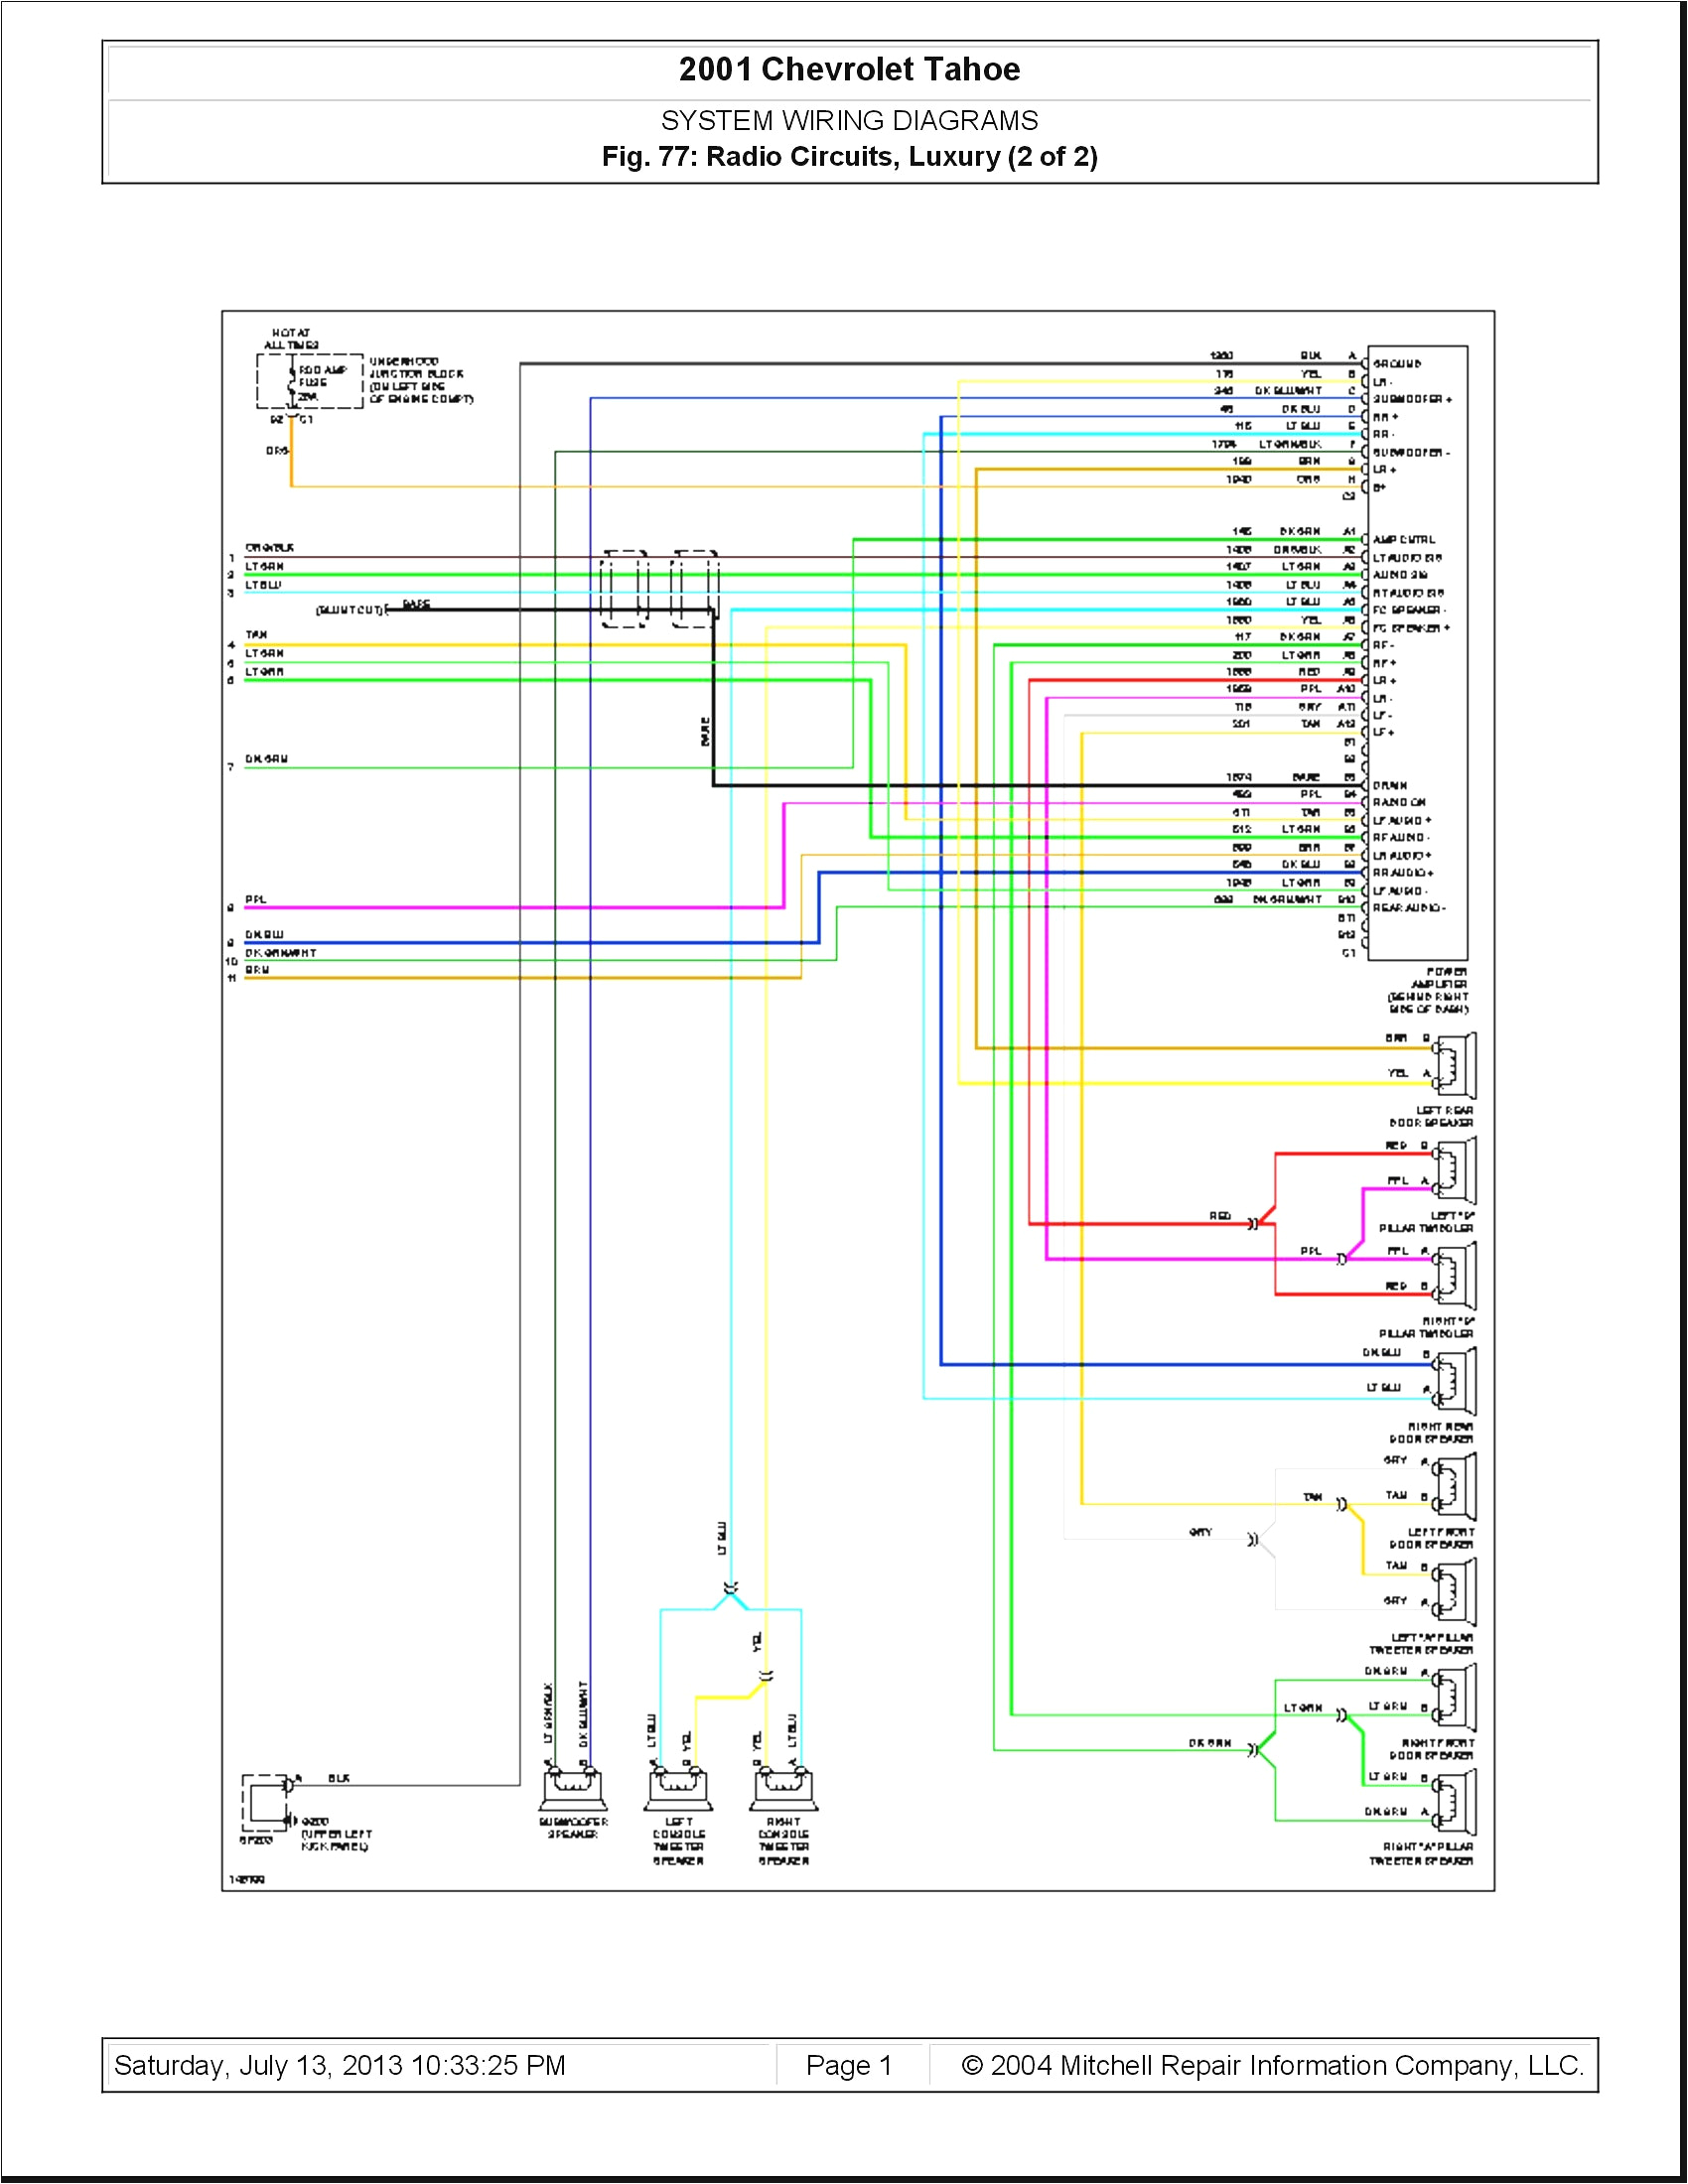 2001 chevy wiring diagram wiring diagram repair guides 2001 chevy cavalier wiring harness diagram 2001 chevy wiring harness diagram